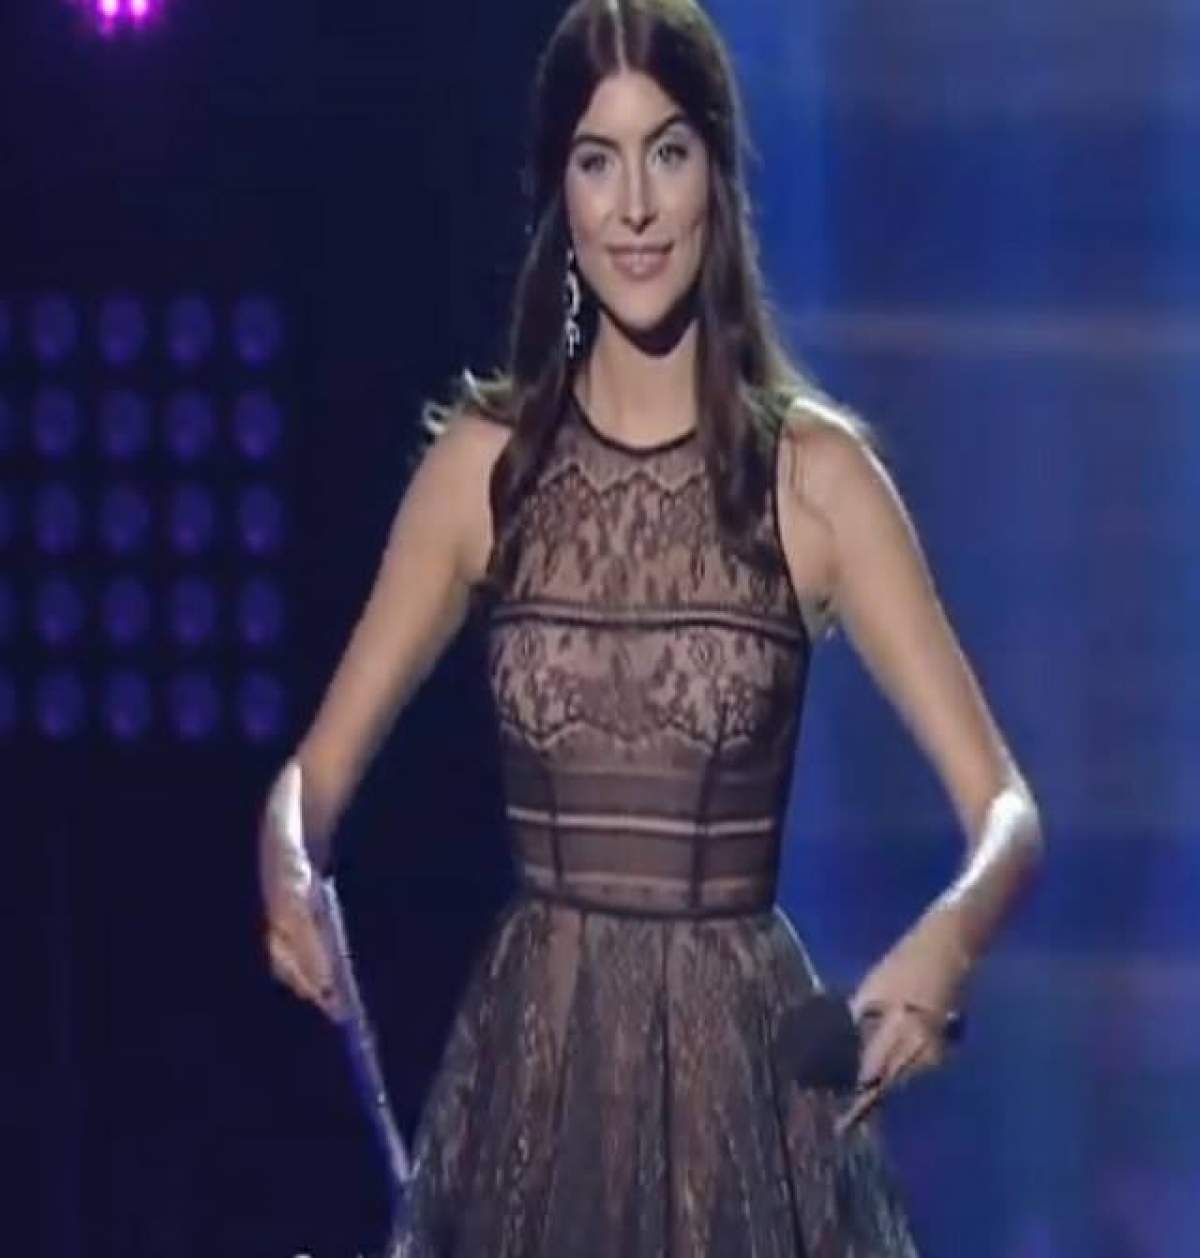 Toţi ochii au fost pe rochia ei. Cum s-a îmbrăcat Ioana Voicu, prezentatoarea "Eurovision 2016"